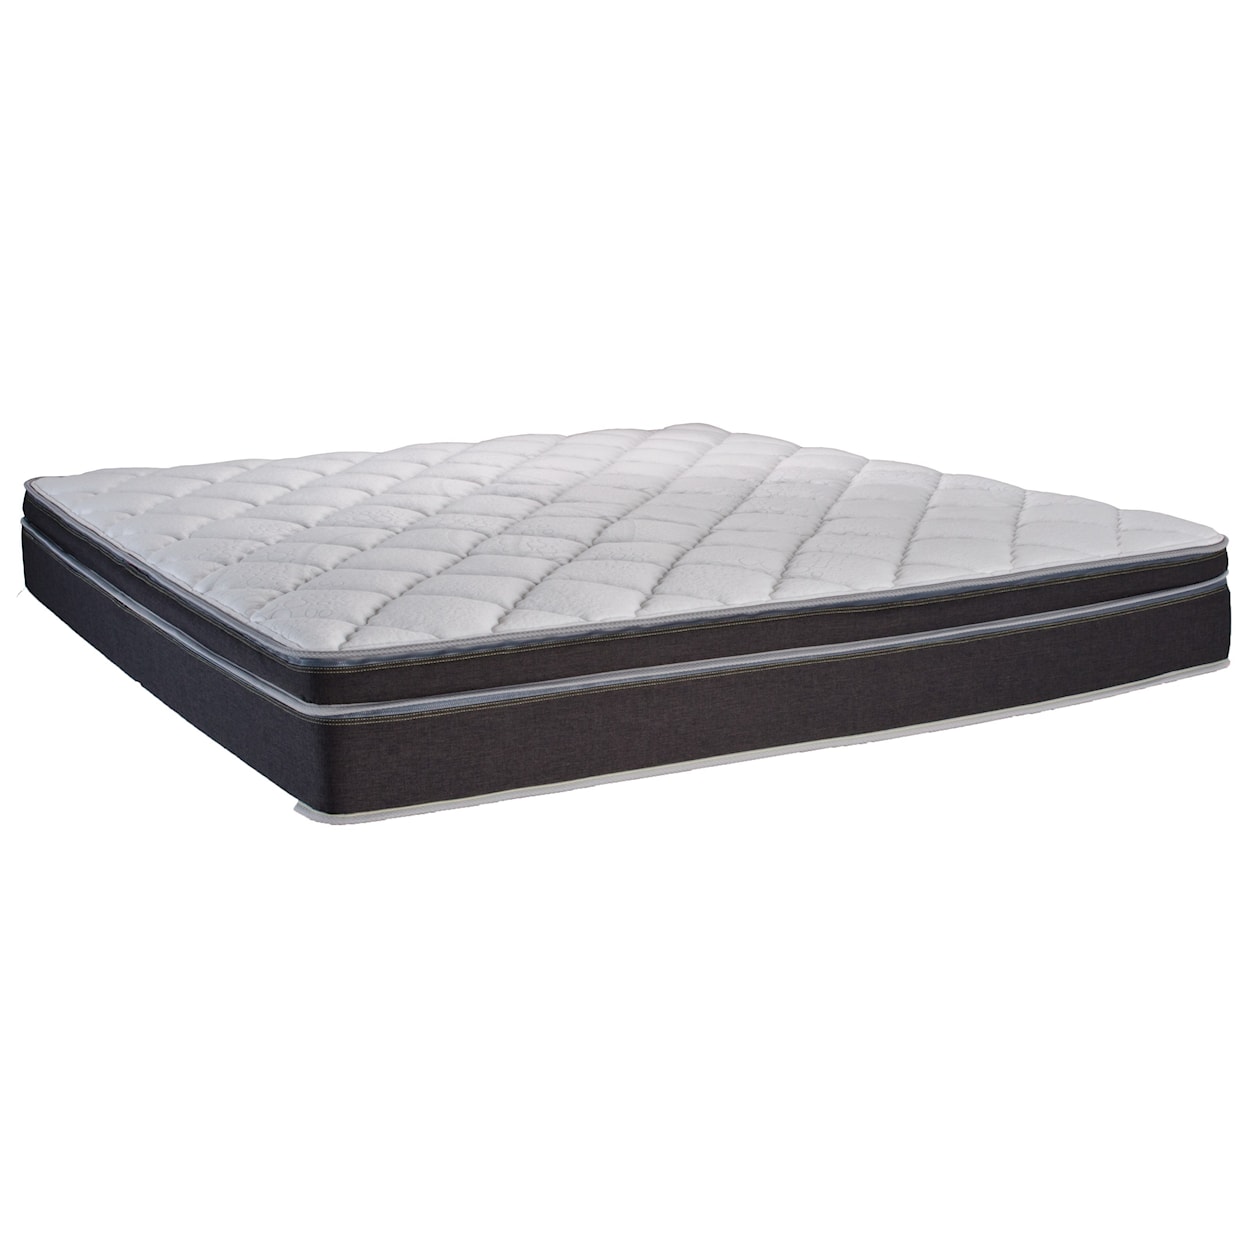 Instant Comfort Q5 InstantComfort King Dual Sleeper Q5 Pillow Top Mattress